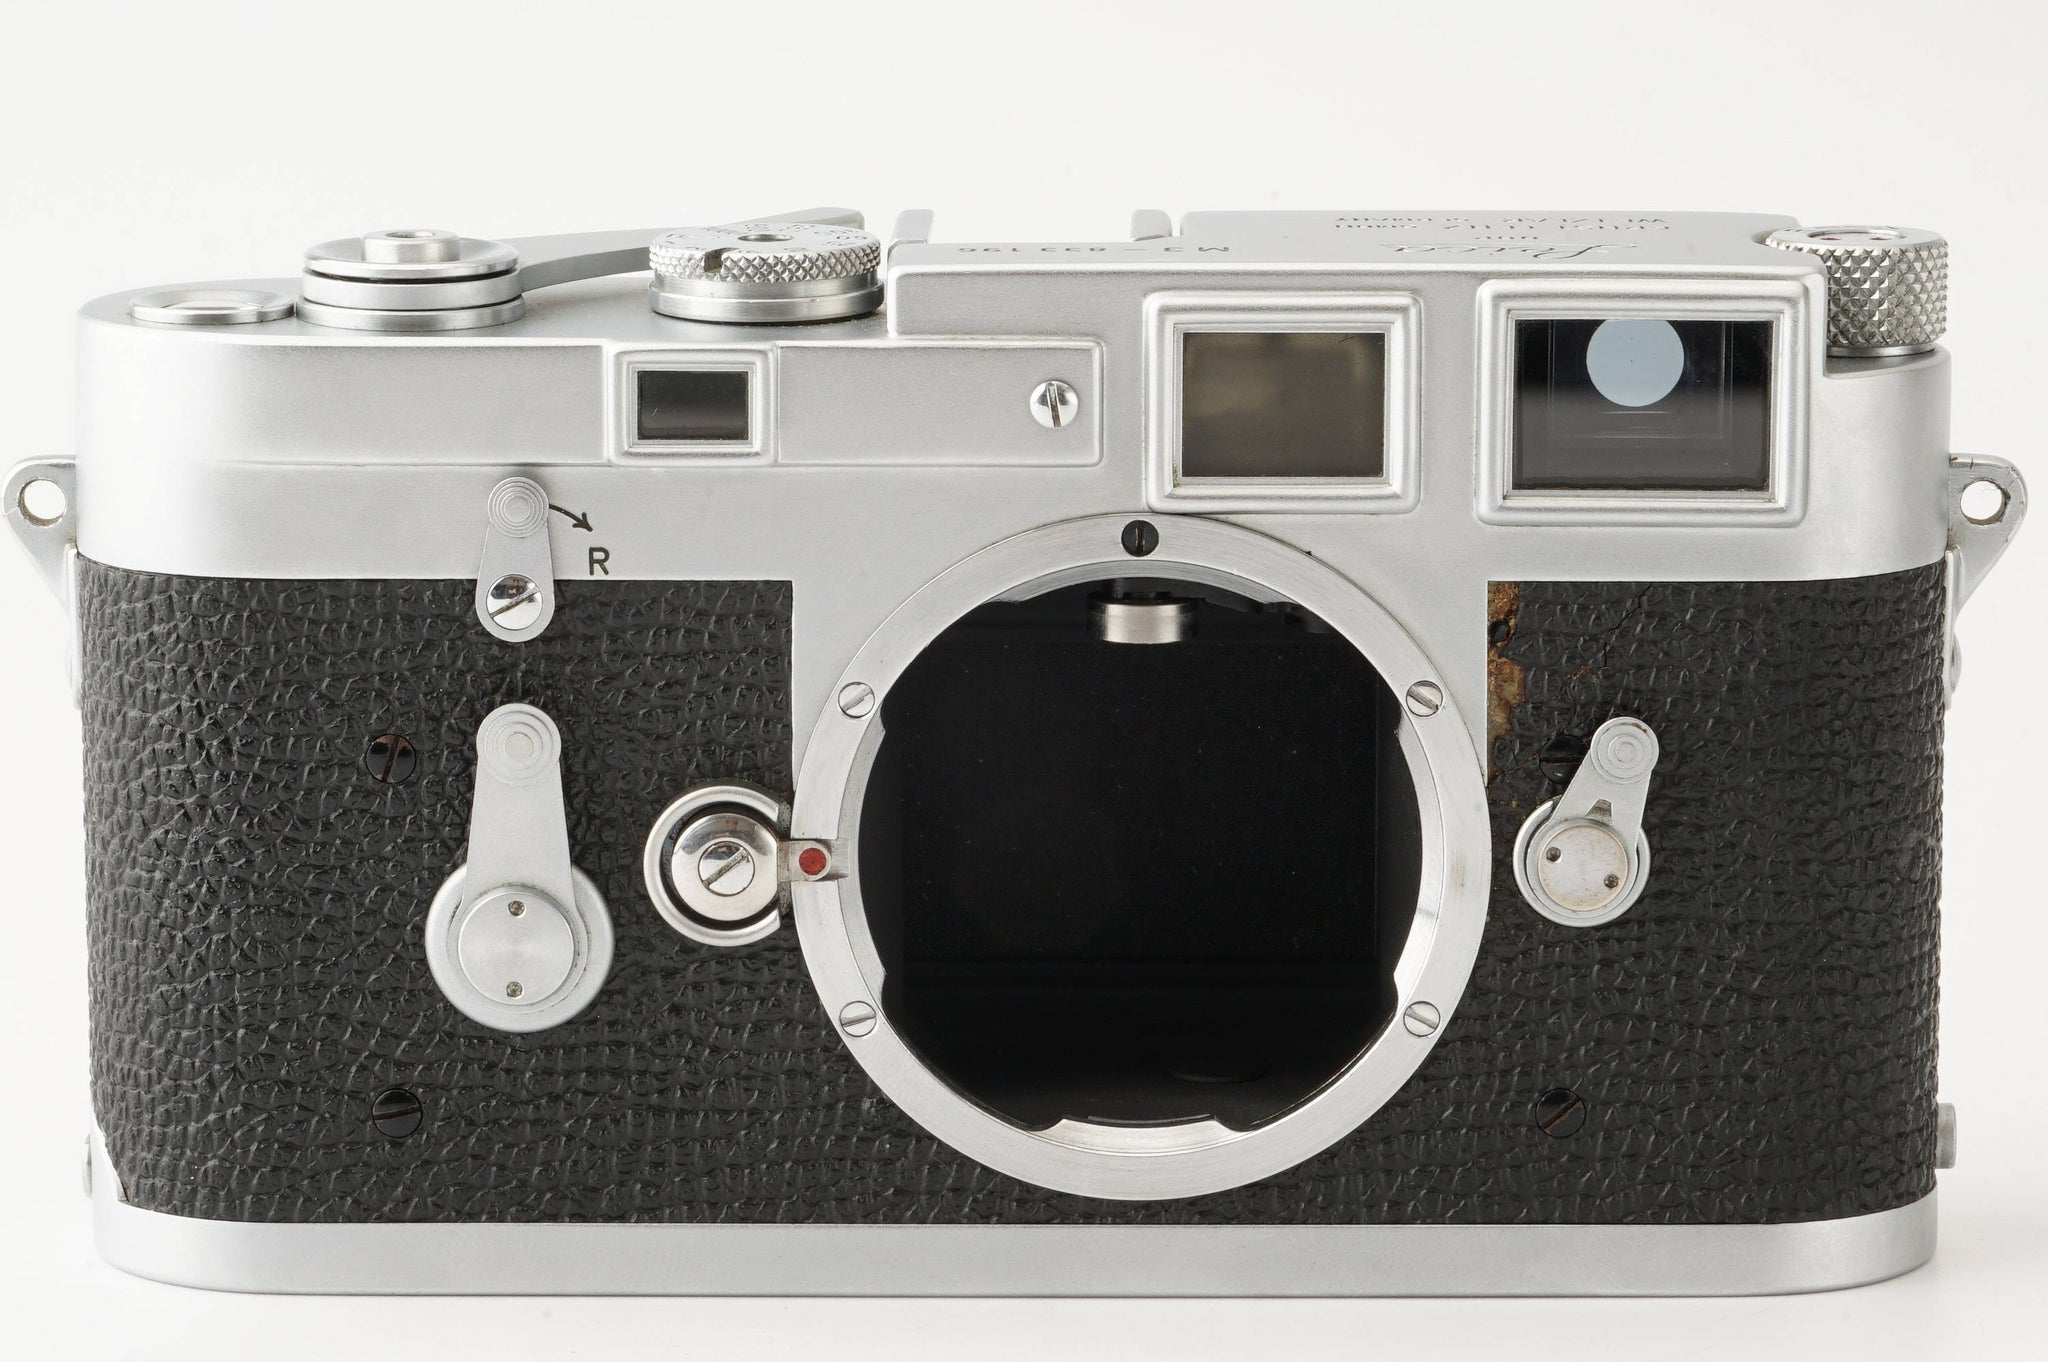 ライカ Leica M3 ダブルストローク レンジファインダーフィルムカメラ